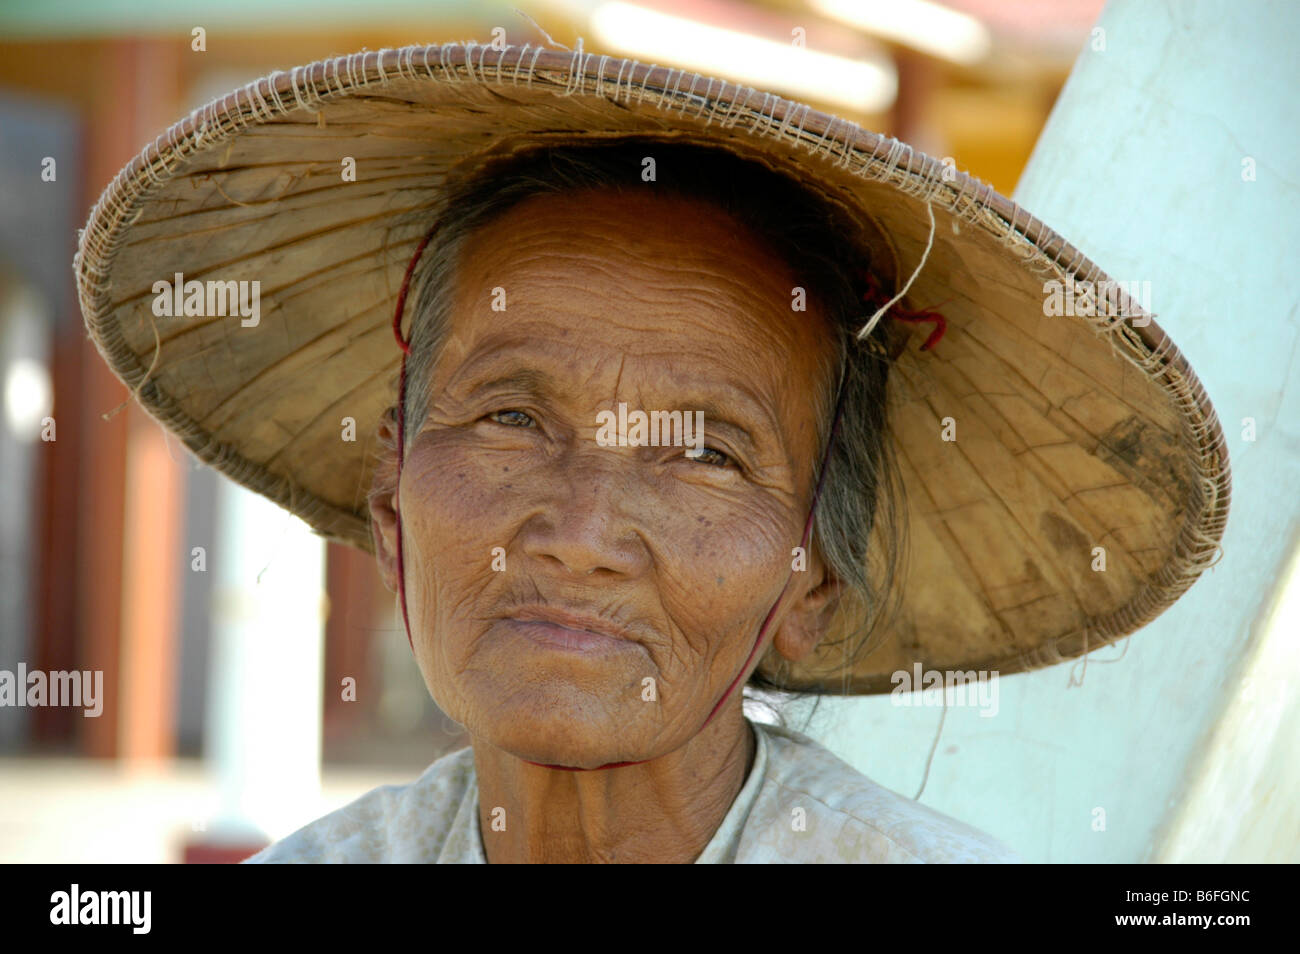 Vecchia donna che indossa un cappello di paglia di riso, ritratto, Stato Shan, Birmania, sud-est asiatico Foto Stock